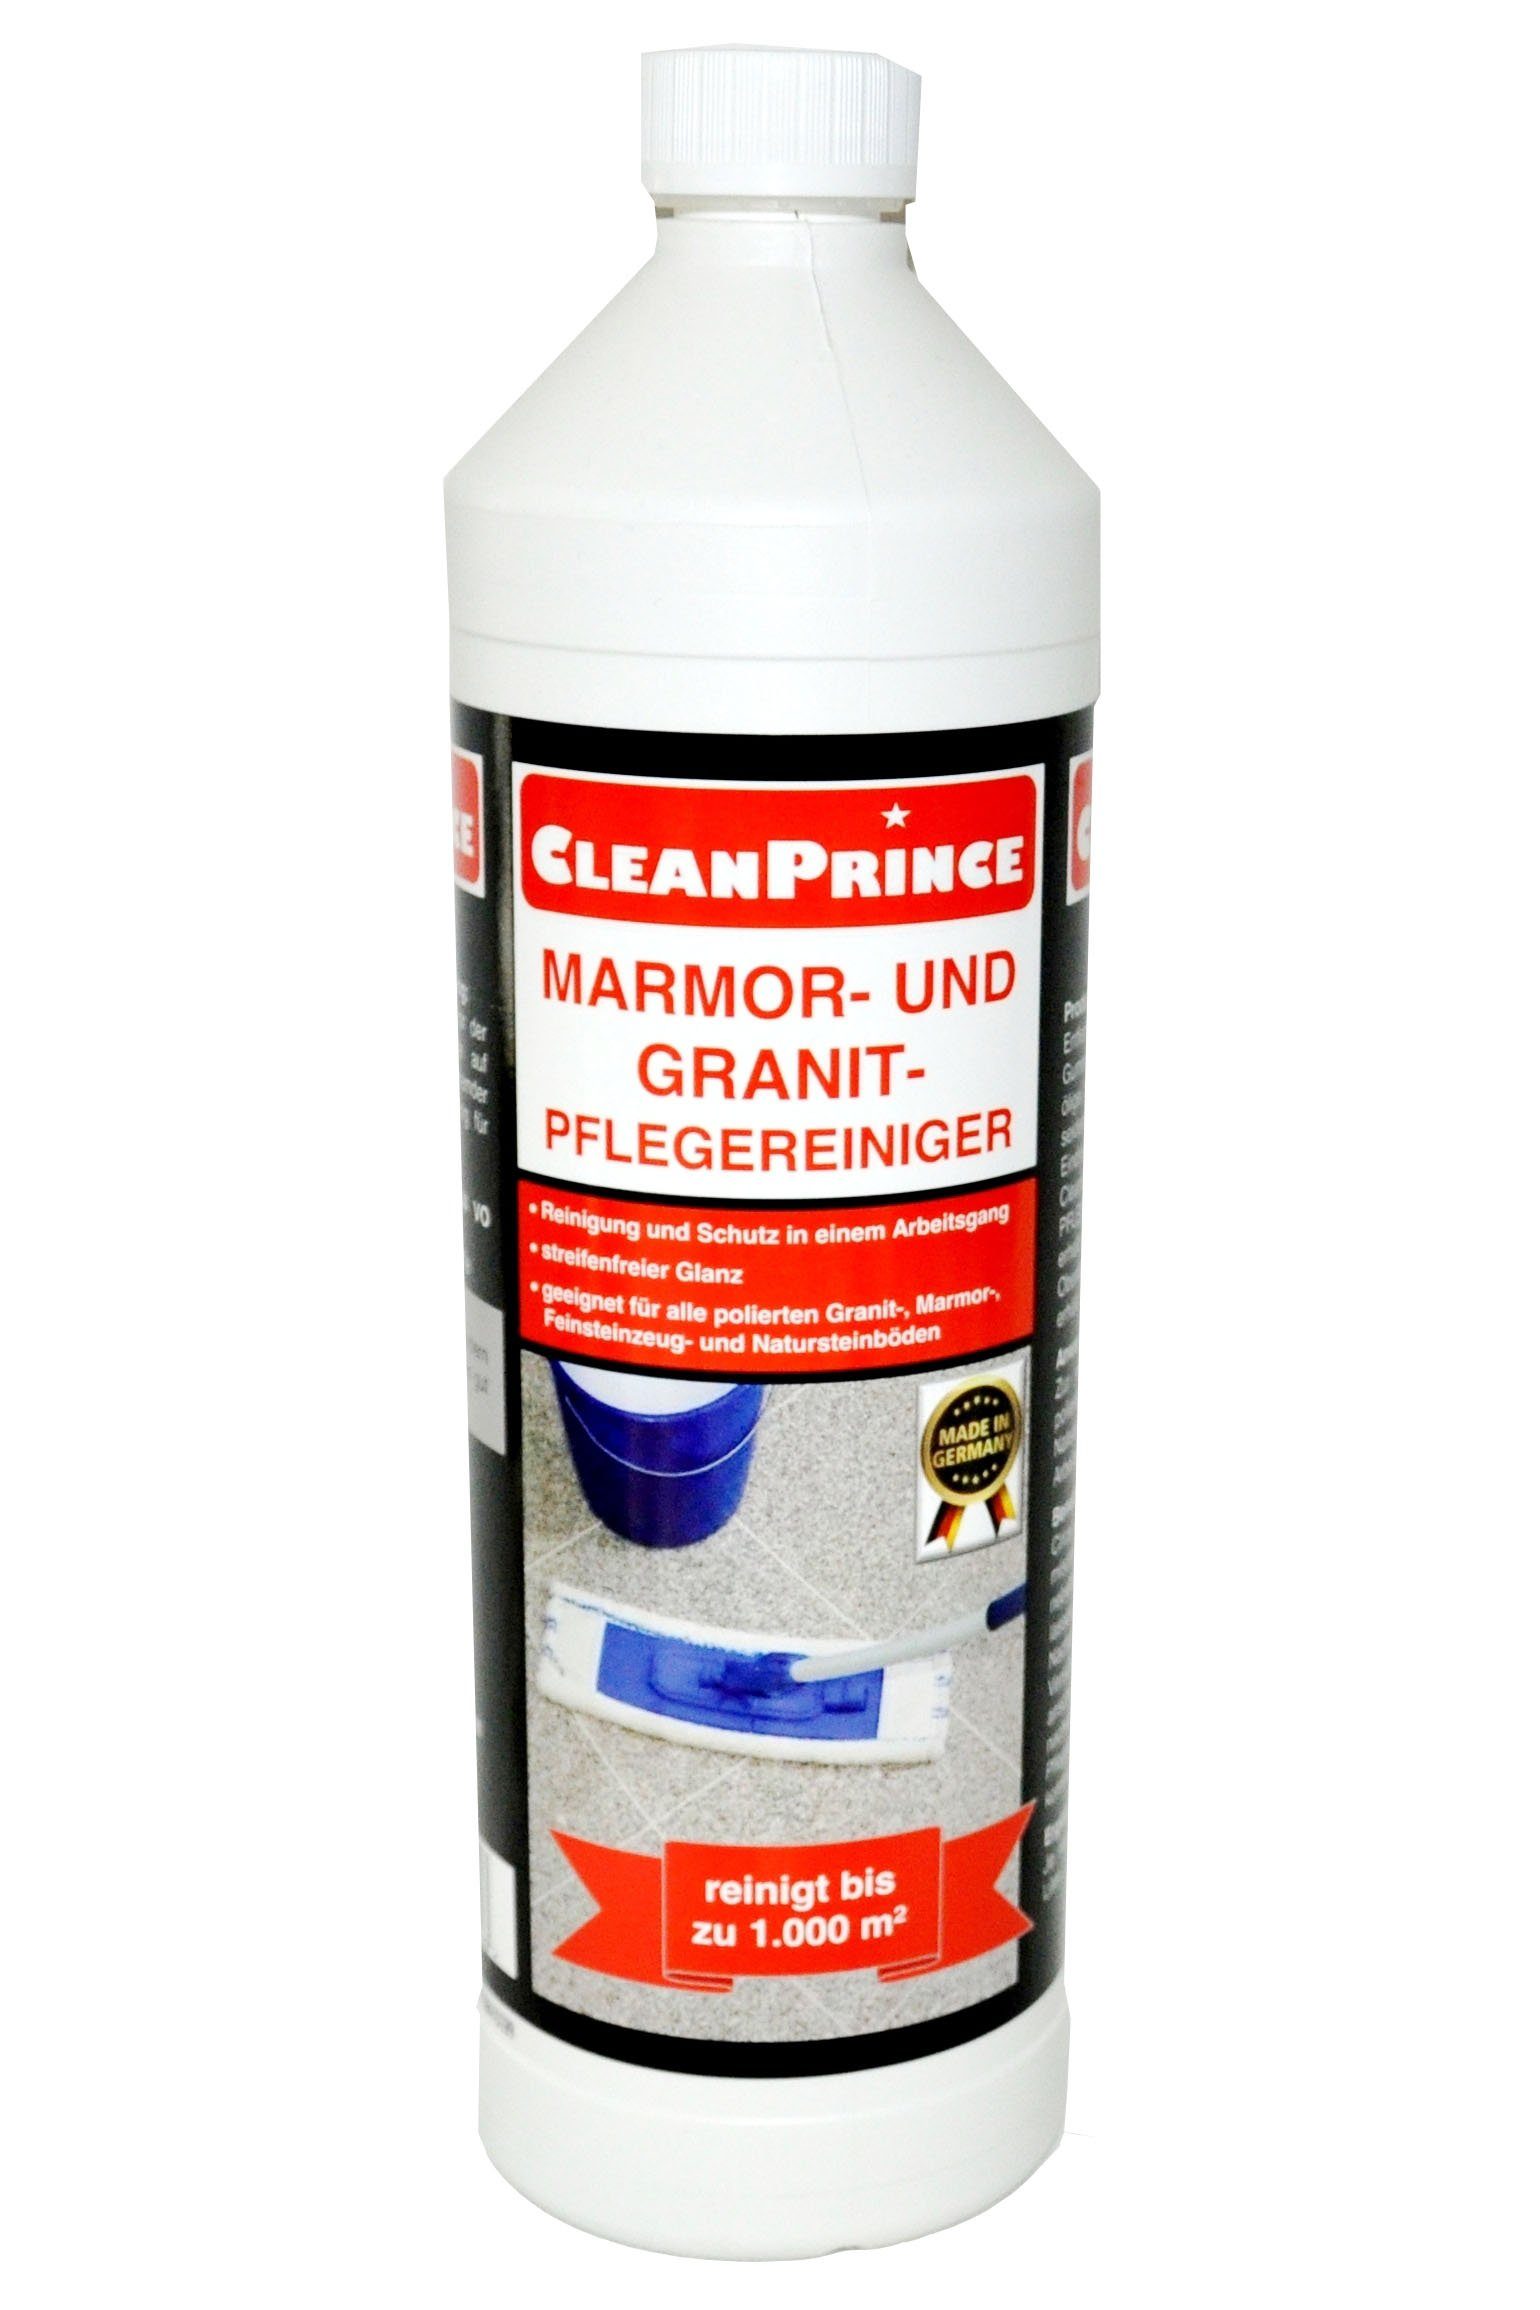 CleanPrince Marmor- und Pflege Reiniger Steinbodenreiniger Granit tgl. Natursteinböden für zur (ideal Reinigung)